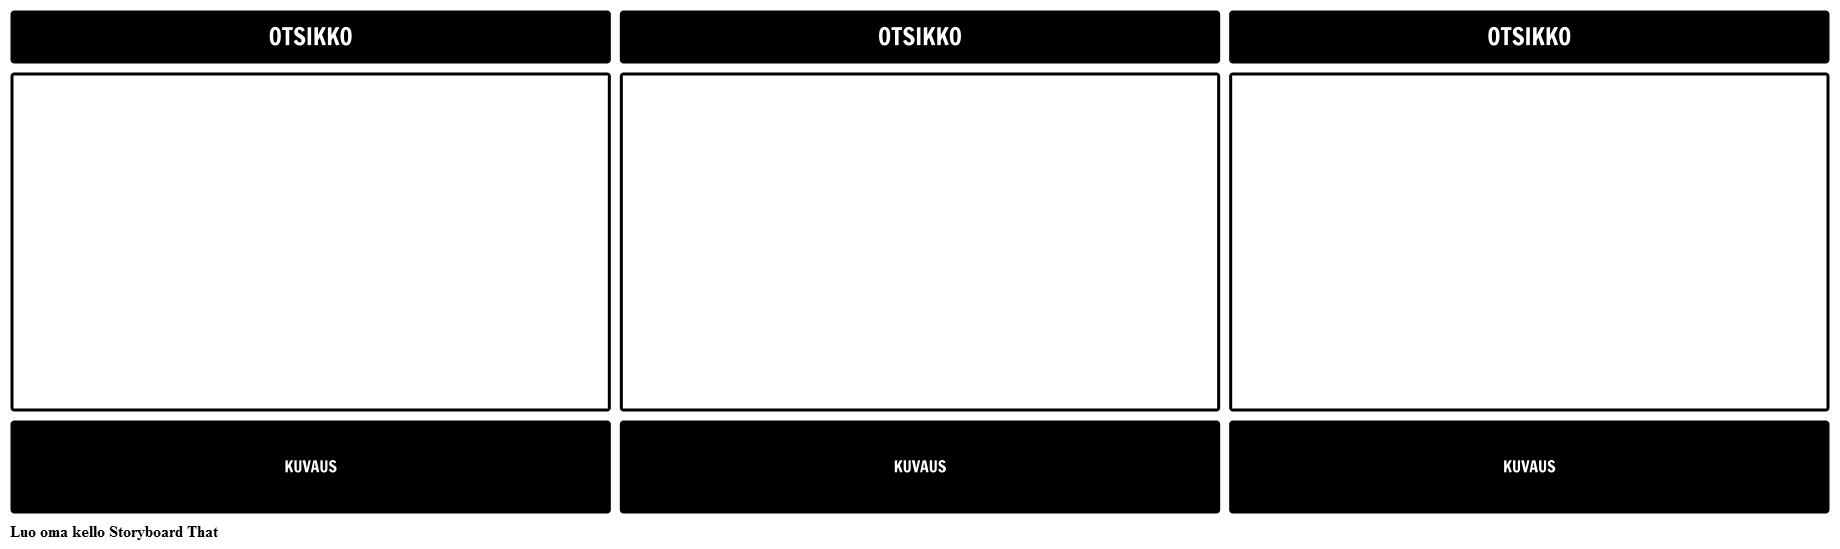 Otsikko-Kuvaus 16x9